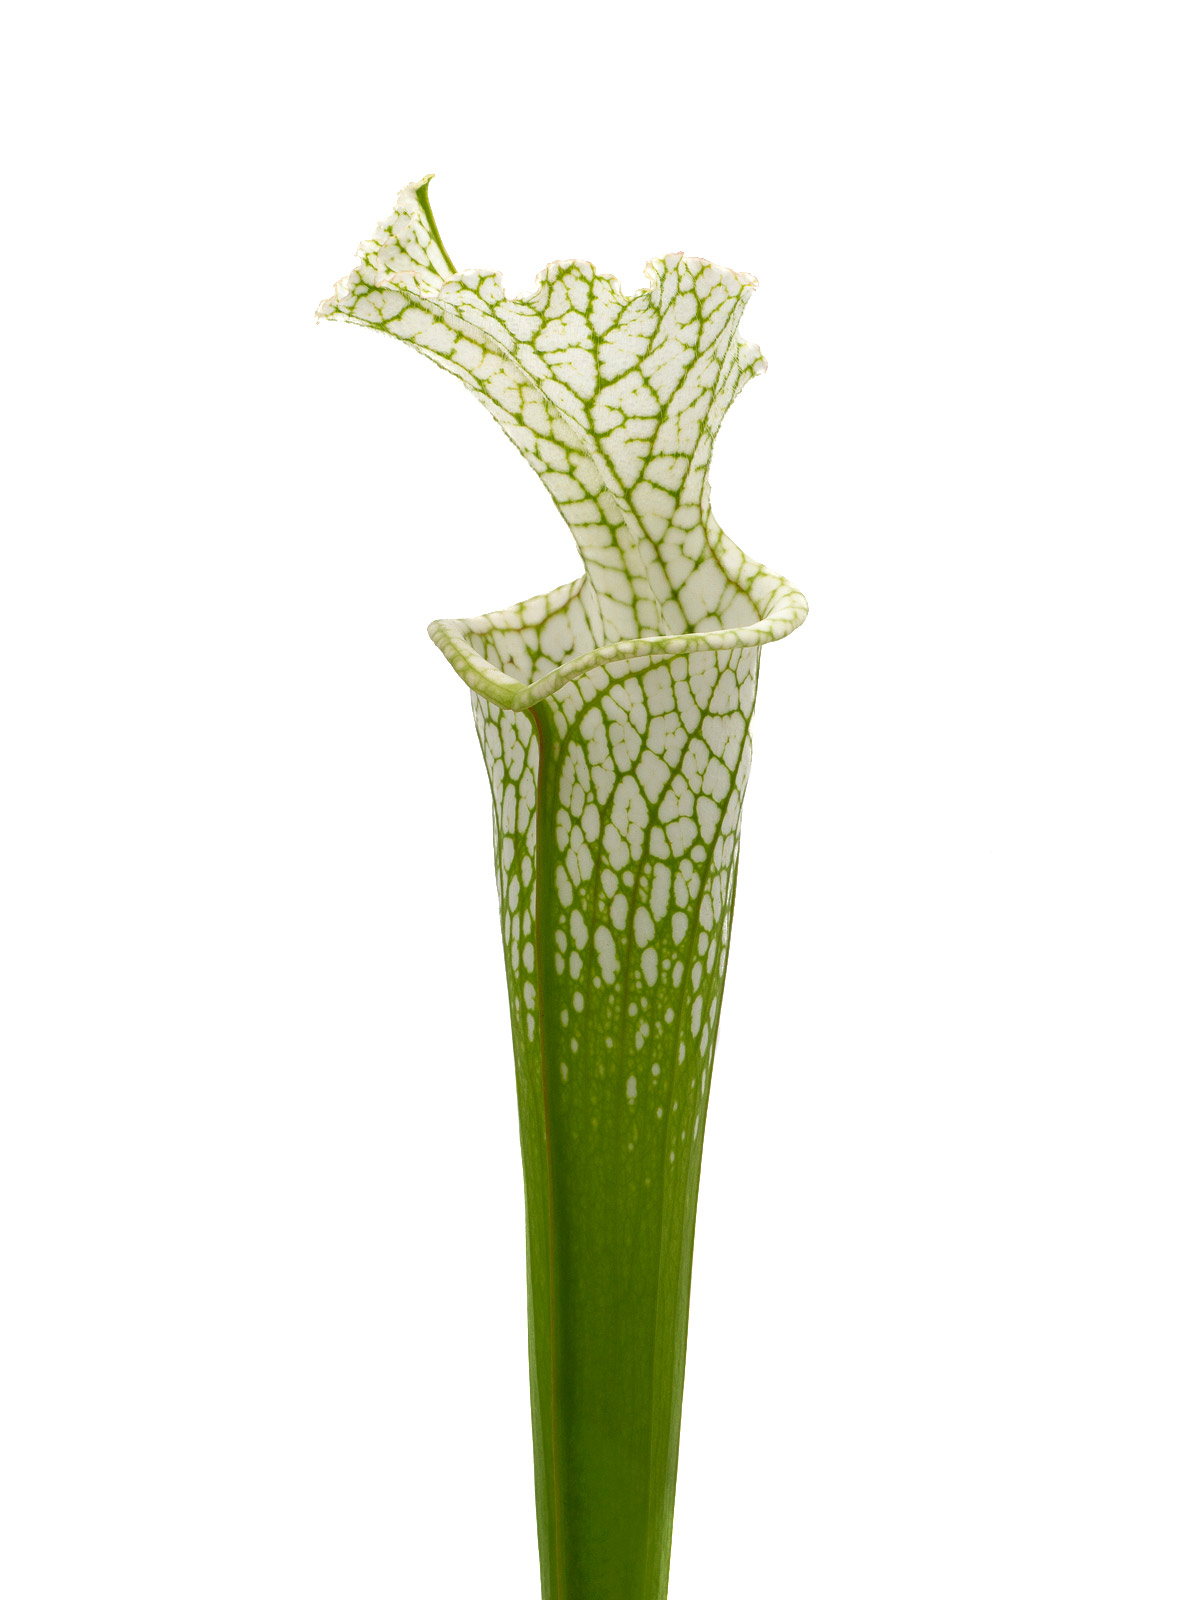 Sarracenia leucophylla var. alba - David Svarc